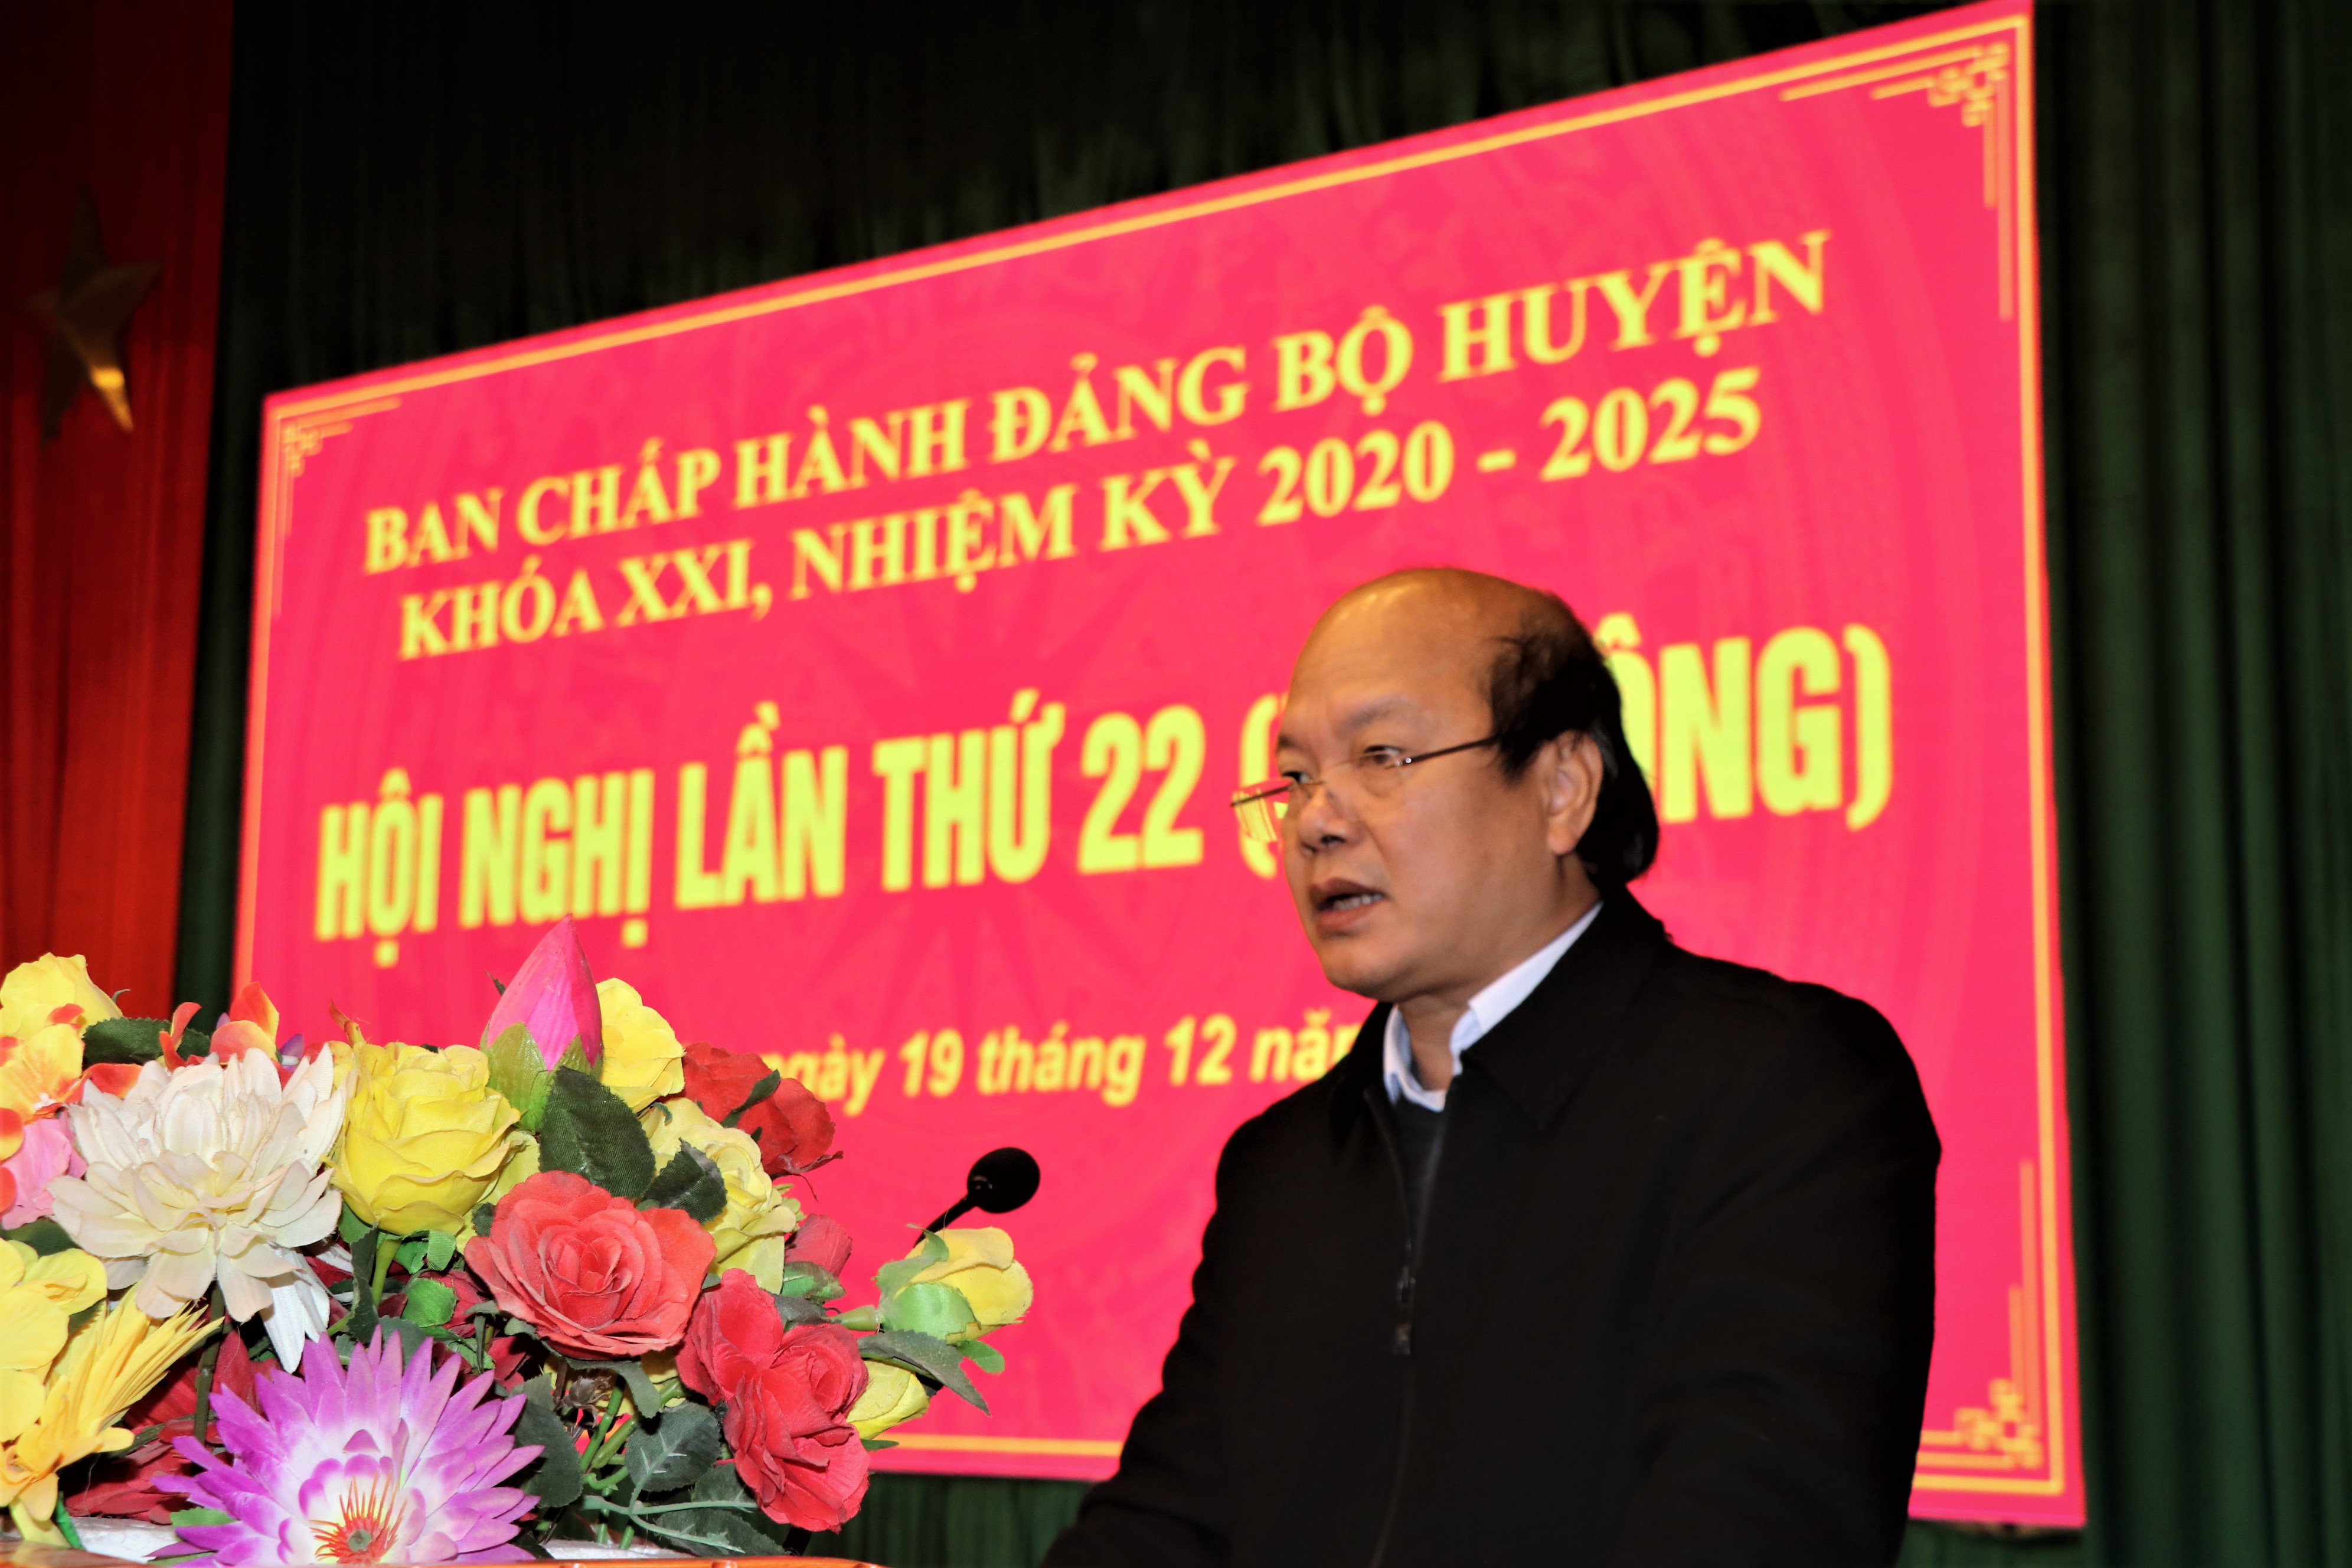 Hội nghị BCH đảng bộ huyện Đồng Văn lần thứ 22